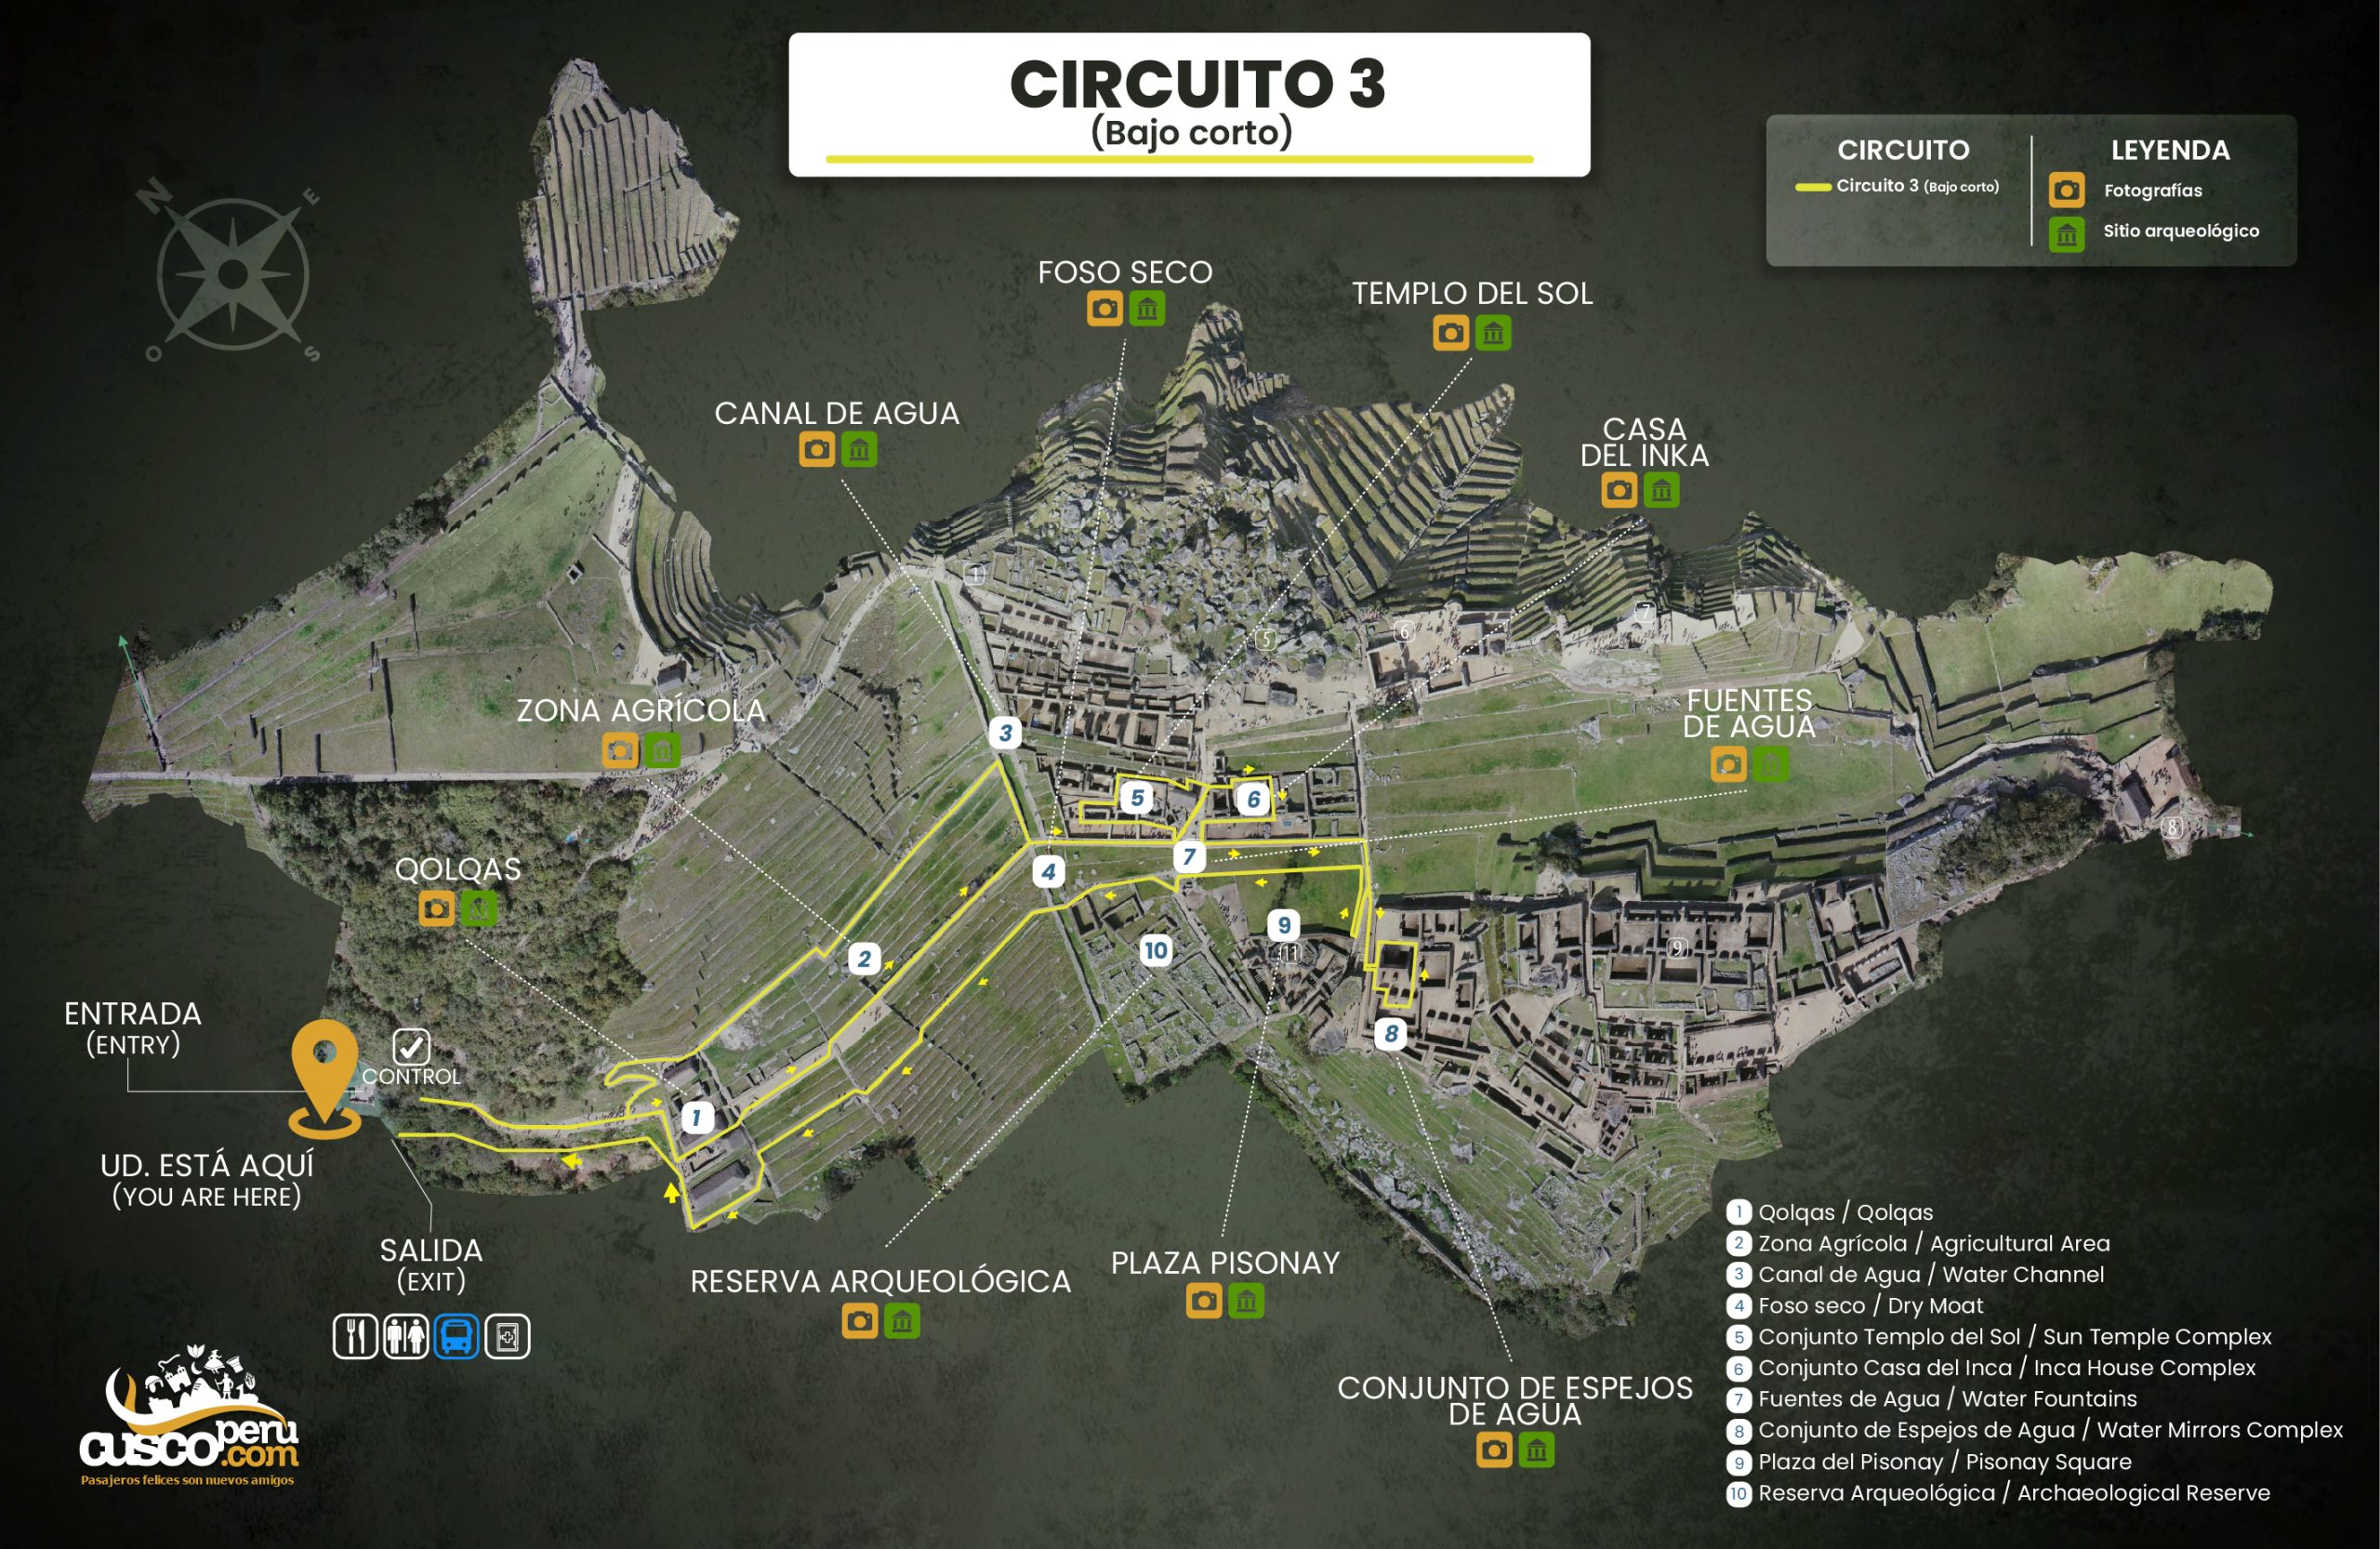 Map of circuit 3 at Machu Picchu. Source: CuscoPeru.com